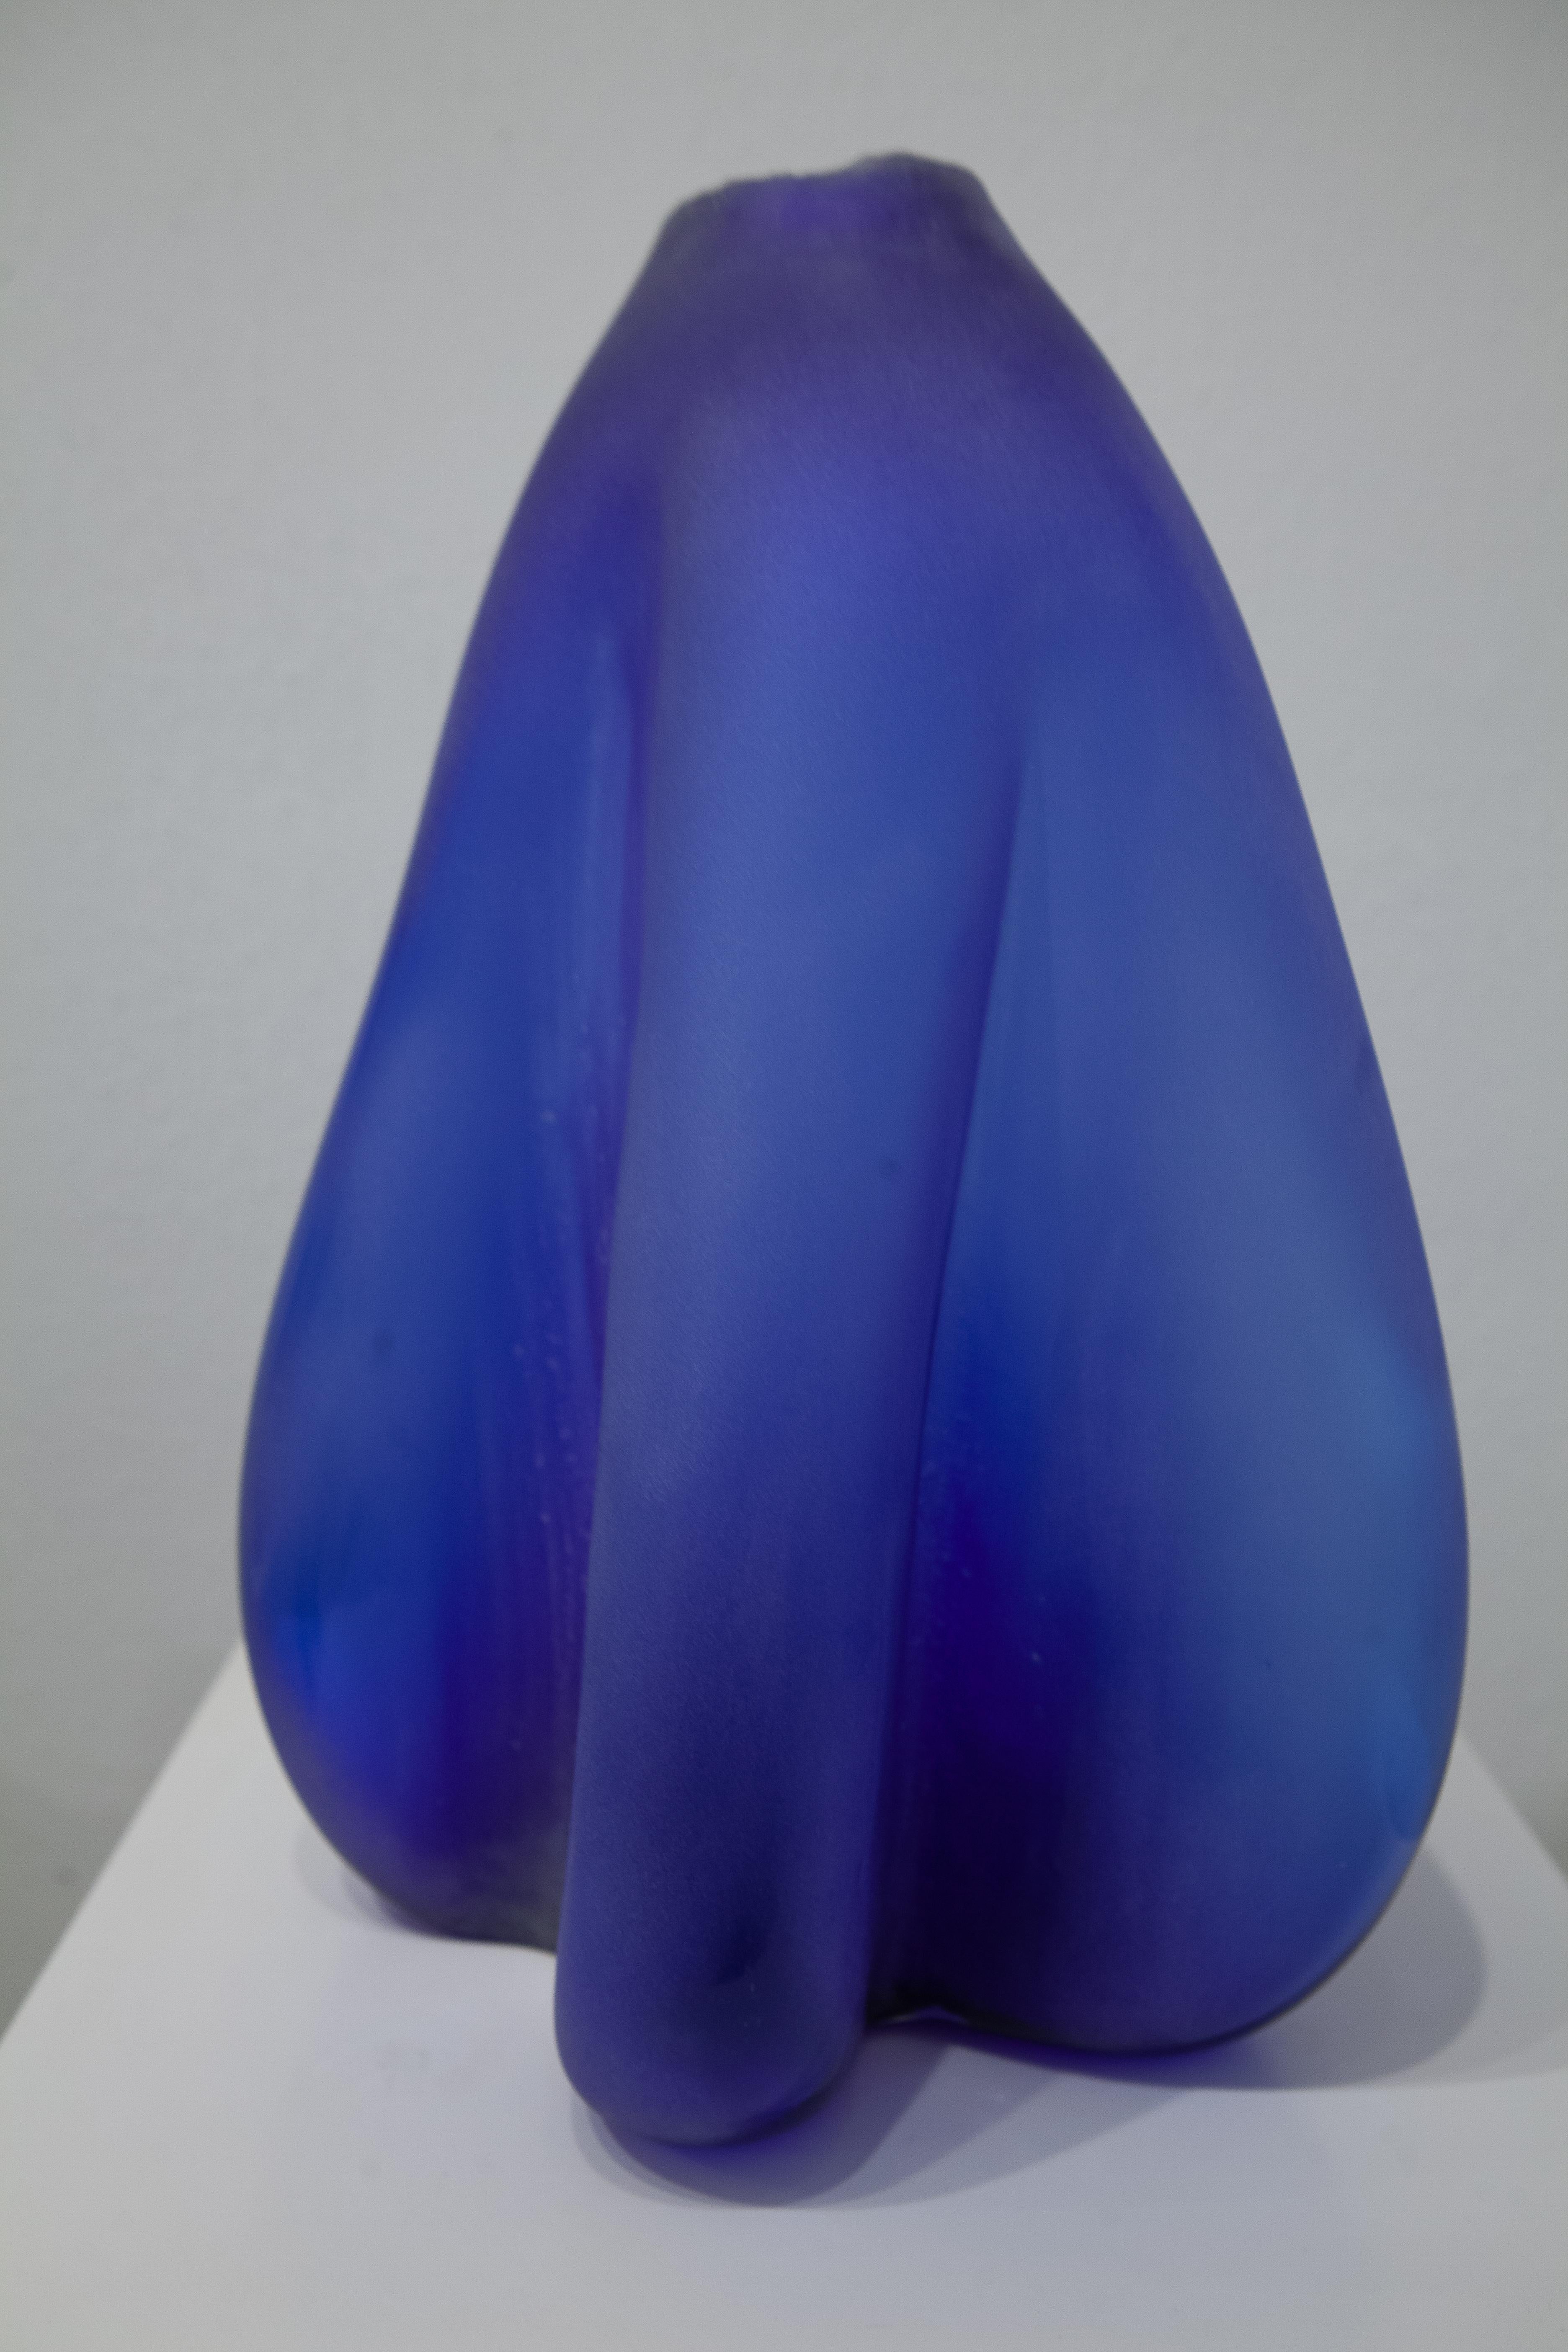 Robert Burch Abstract Sculpture - Blue Curtain (blown glass design craft cobalt blue sleek table-top sculpture)